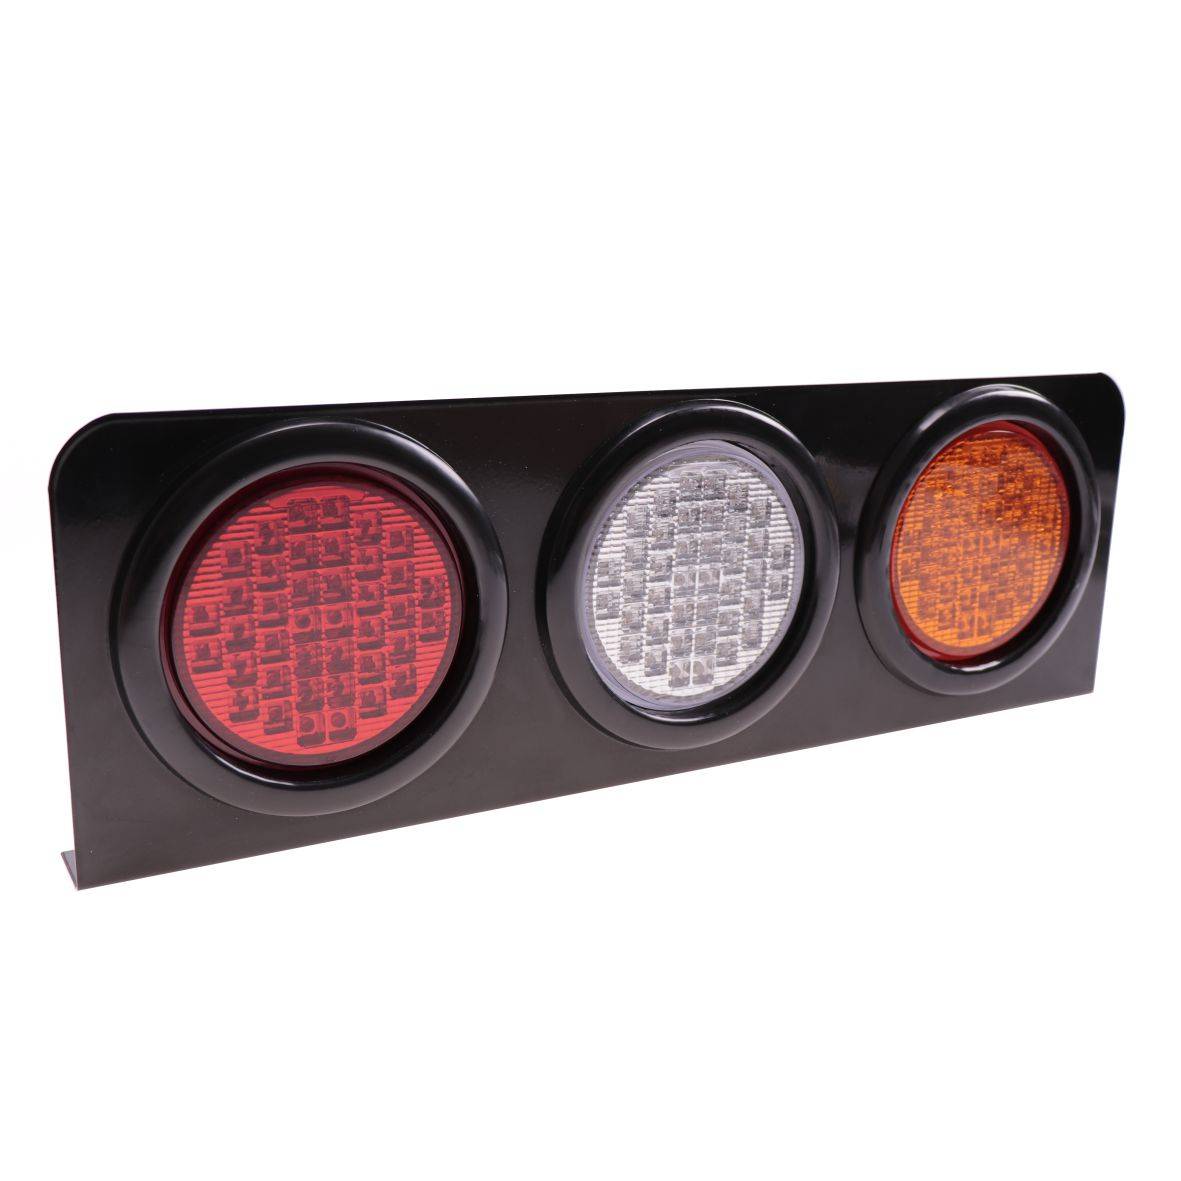  Bande LED pour coffre de voiture - 119,4 cm 149,9 cm -  Clignotants de feux de freinage arrière - NSLUMO